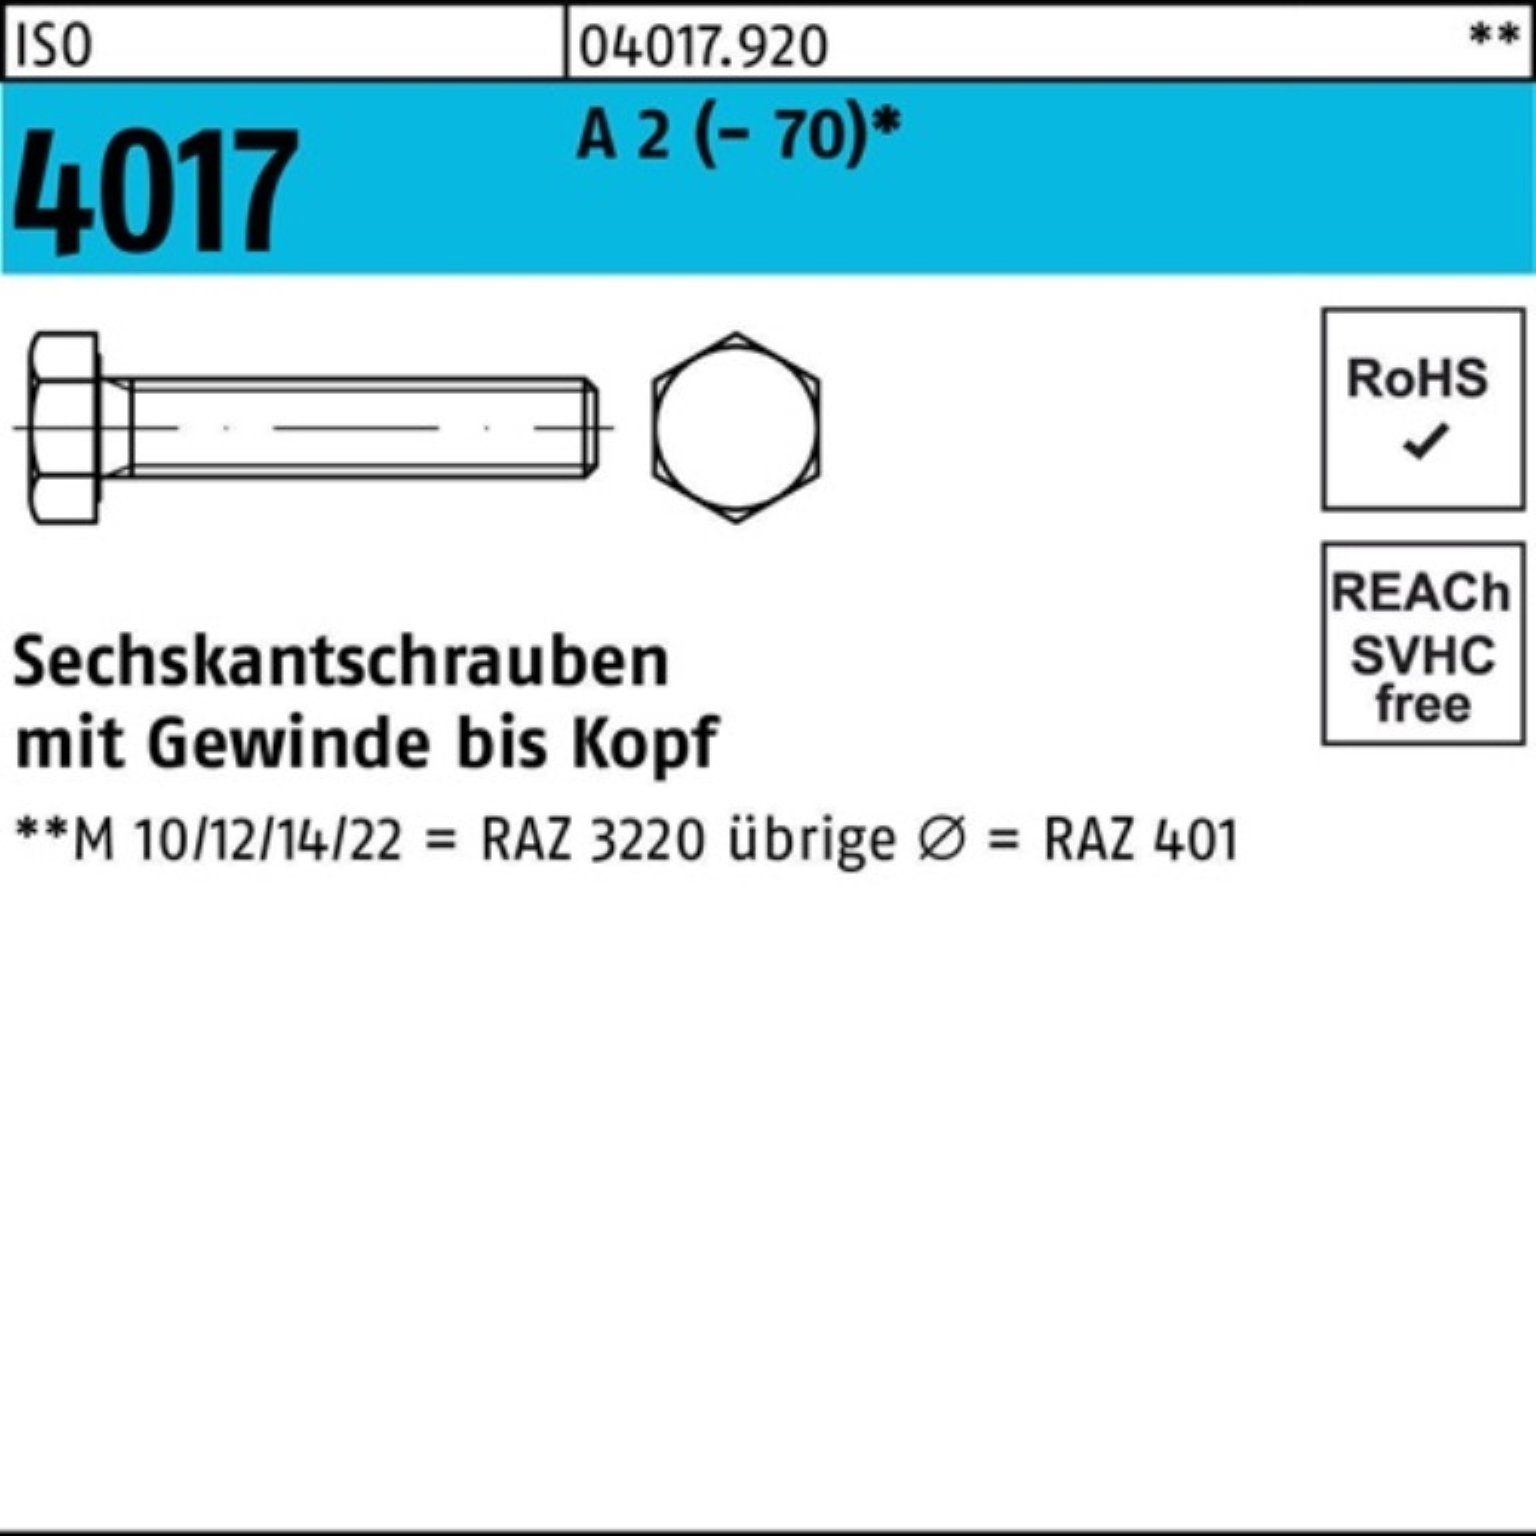 Bufab Sechskantschraube 100er Pack Sechskantschraube ISO 4017 VG M12x 140 A 2 (70) 1 Stück